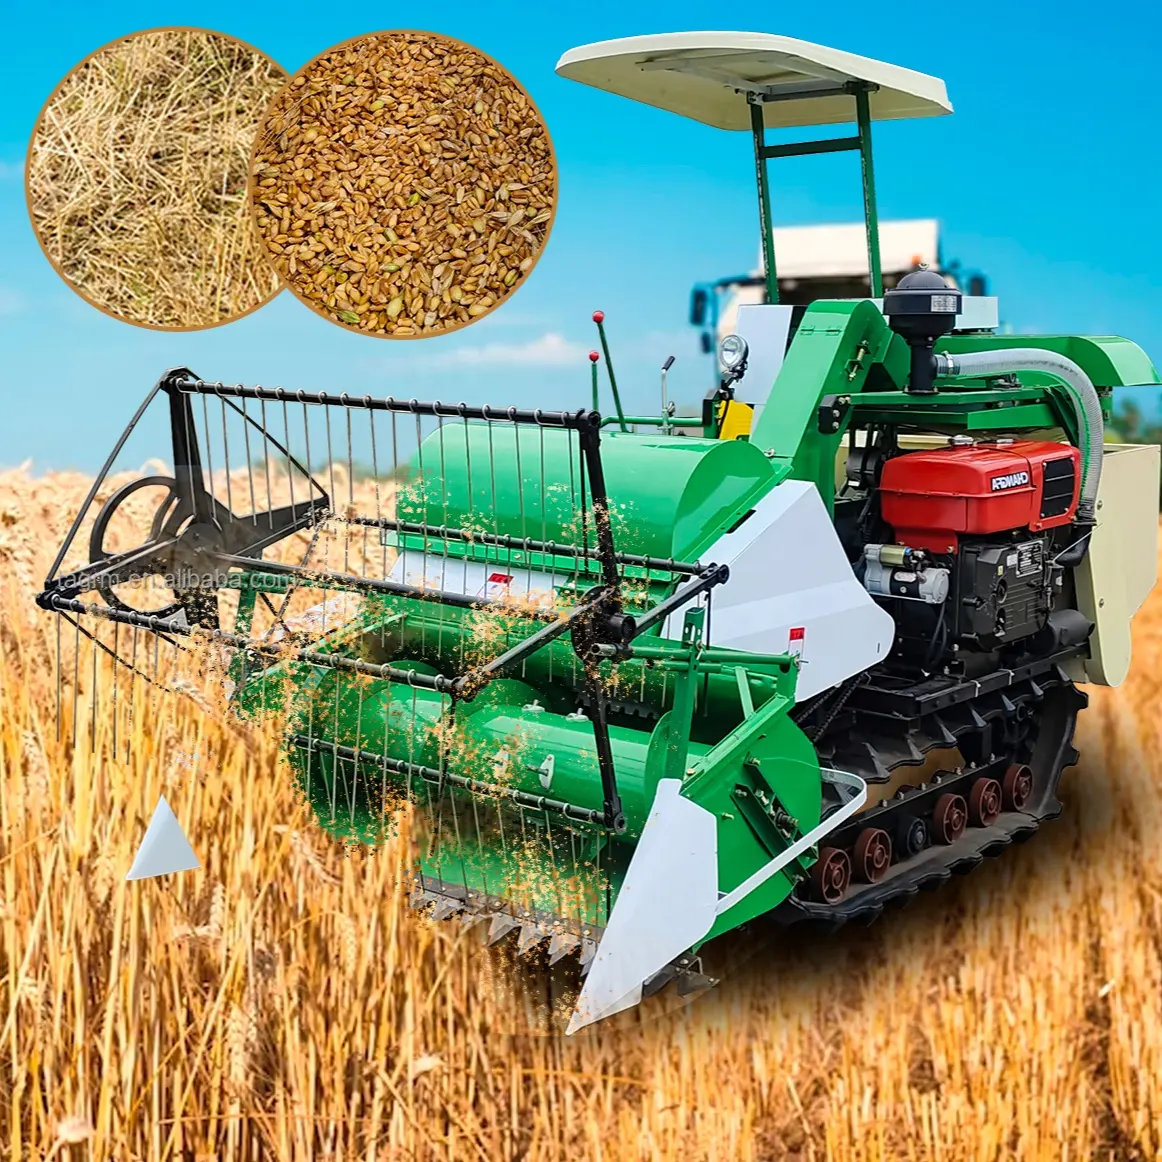 स्वचालित फार्म में प्रयुक्त हार्वेस्टर, नया कुबोटा हार्वेस्टर एफएम, अनाज फसलों के लिए विश्व का छोटा गेहूं चावल कंबाइन हार्वेस्टर, चावल और गेहूं